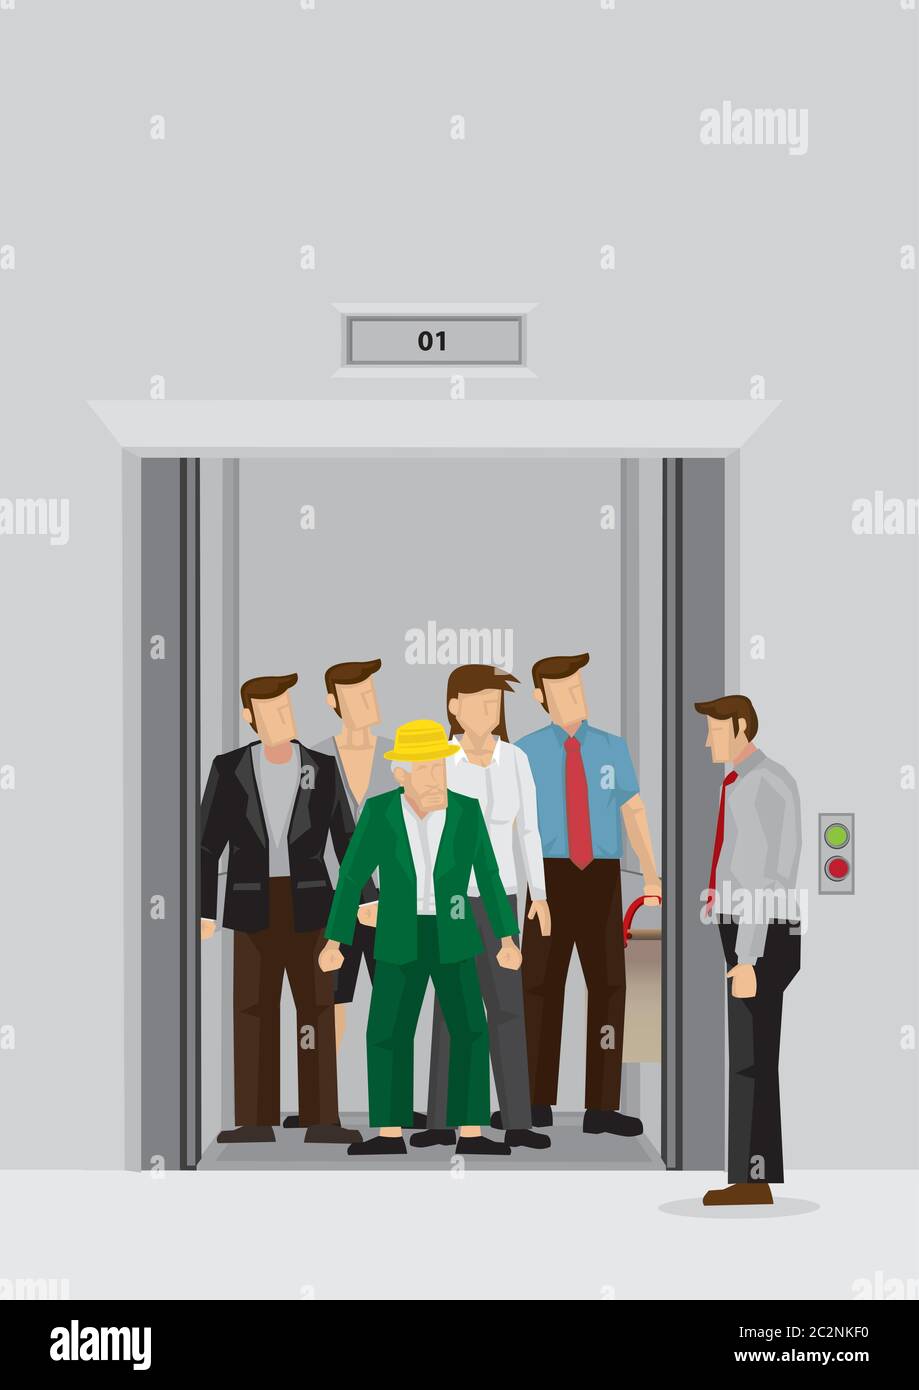 Homme d'affaires debout à côté de l'ascenseur plein de personnes à l'intérieur. Illustration vectorielle de la foule quotidienne du matin à l'heure de pointe dans l'ascenseur du hall isol Illustration de Vecteur